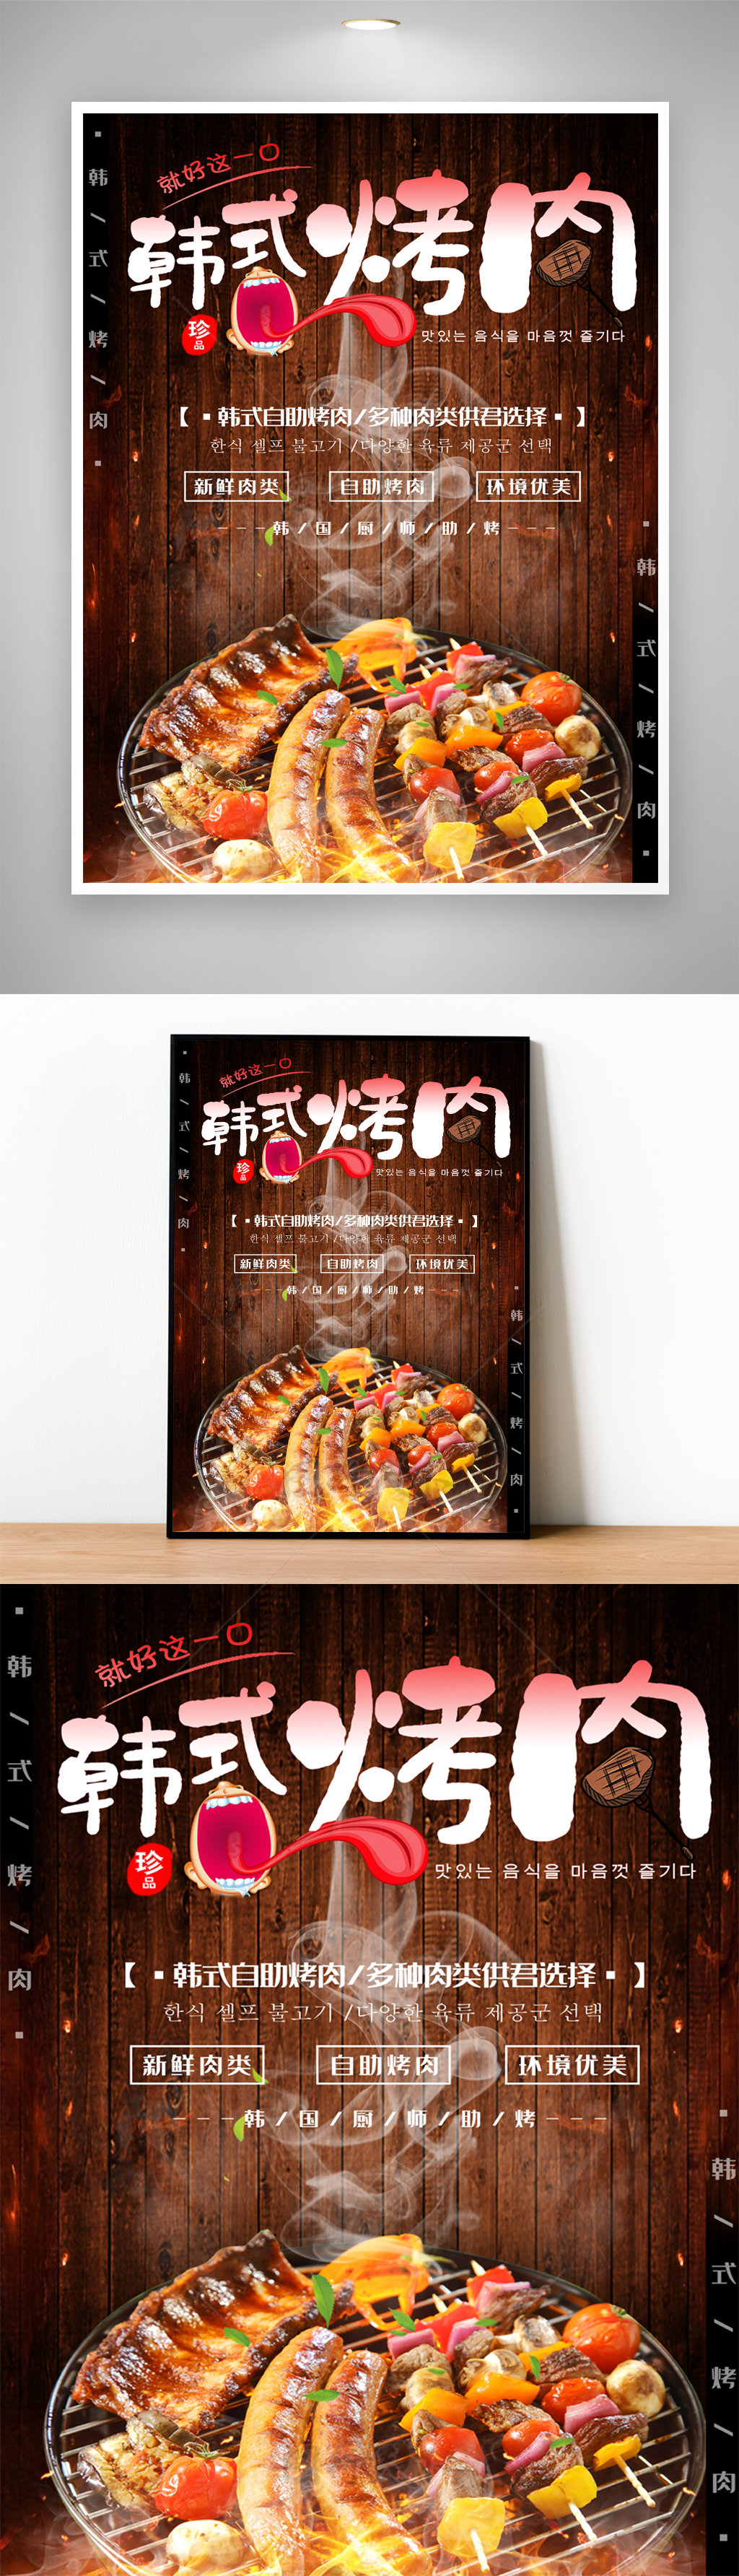 舌尖美味韩式烤肉宣传海报